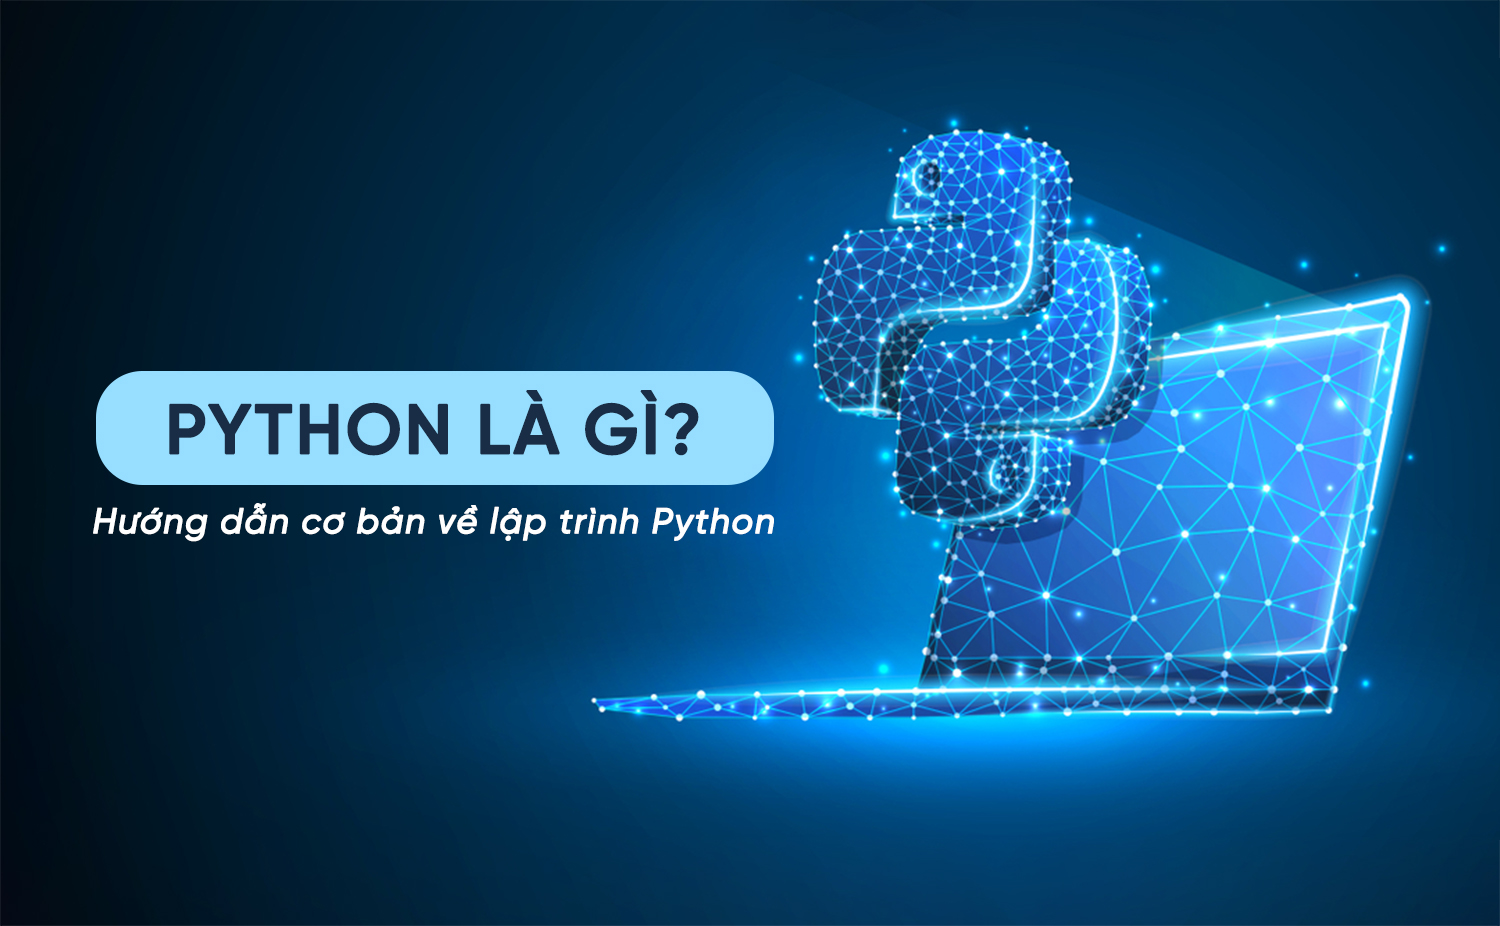 Python là gì? Hướng dẫn cơ bản về lập trình python